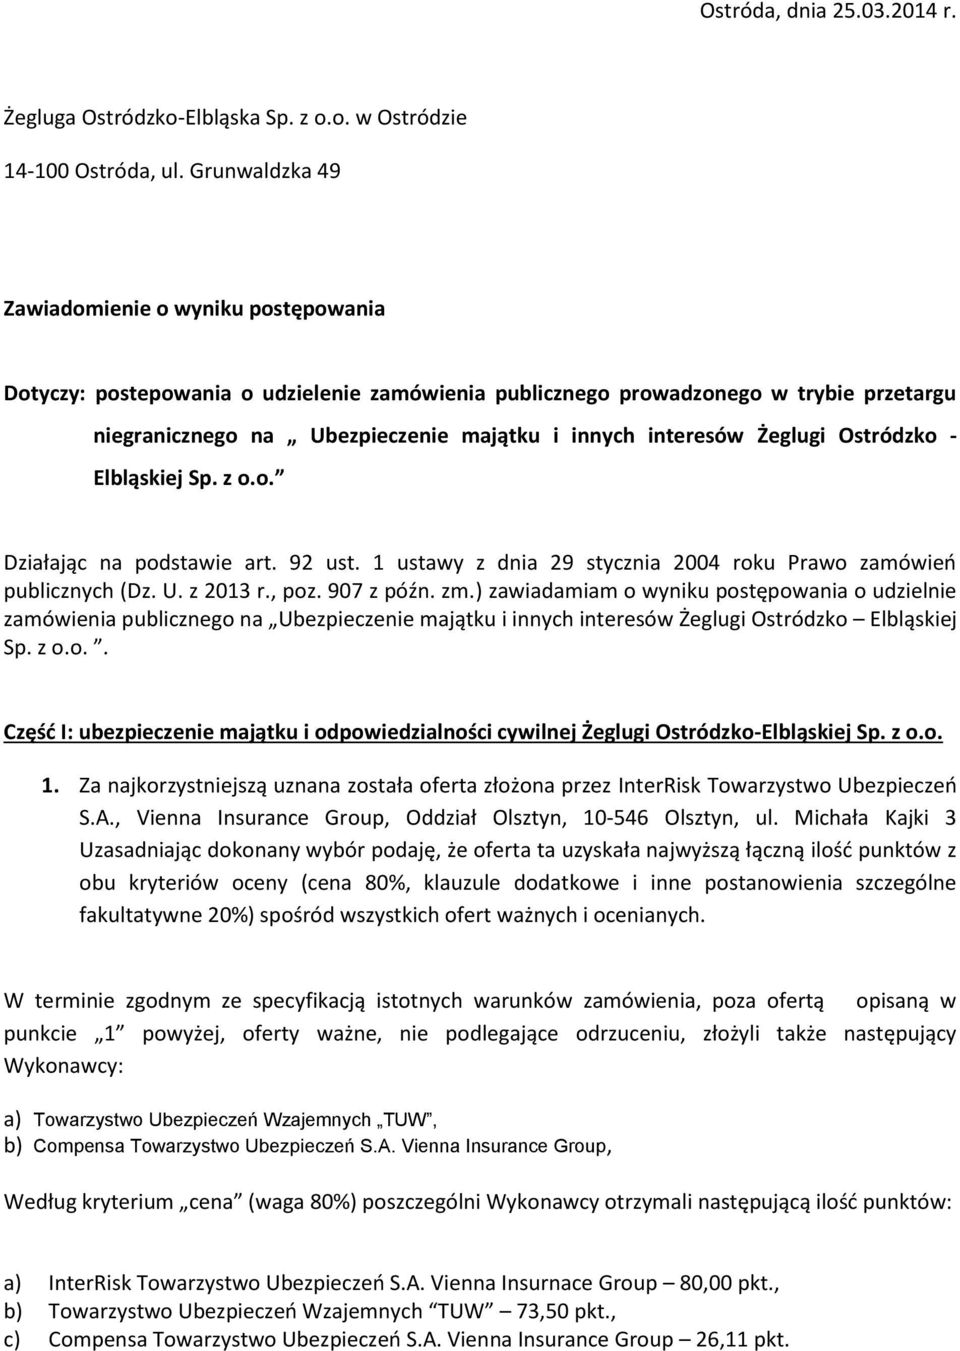 Żeglugi Ostródzko - Elbląskiej Sp. z o.o. Działając na podstawie art. 92 ust. 1 ustawy z dnia 29 stycznia 2004 roku Prawo zamówień publicznych (Dz. U. z 2013 r., poz. 907 z późn. zm.